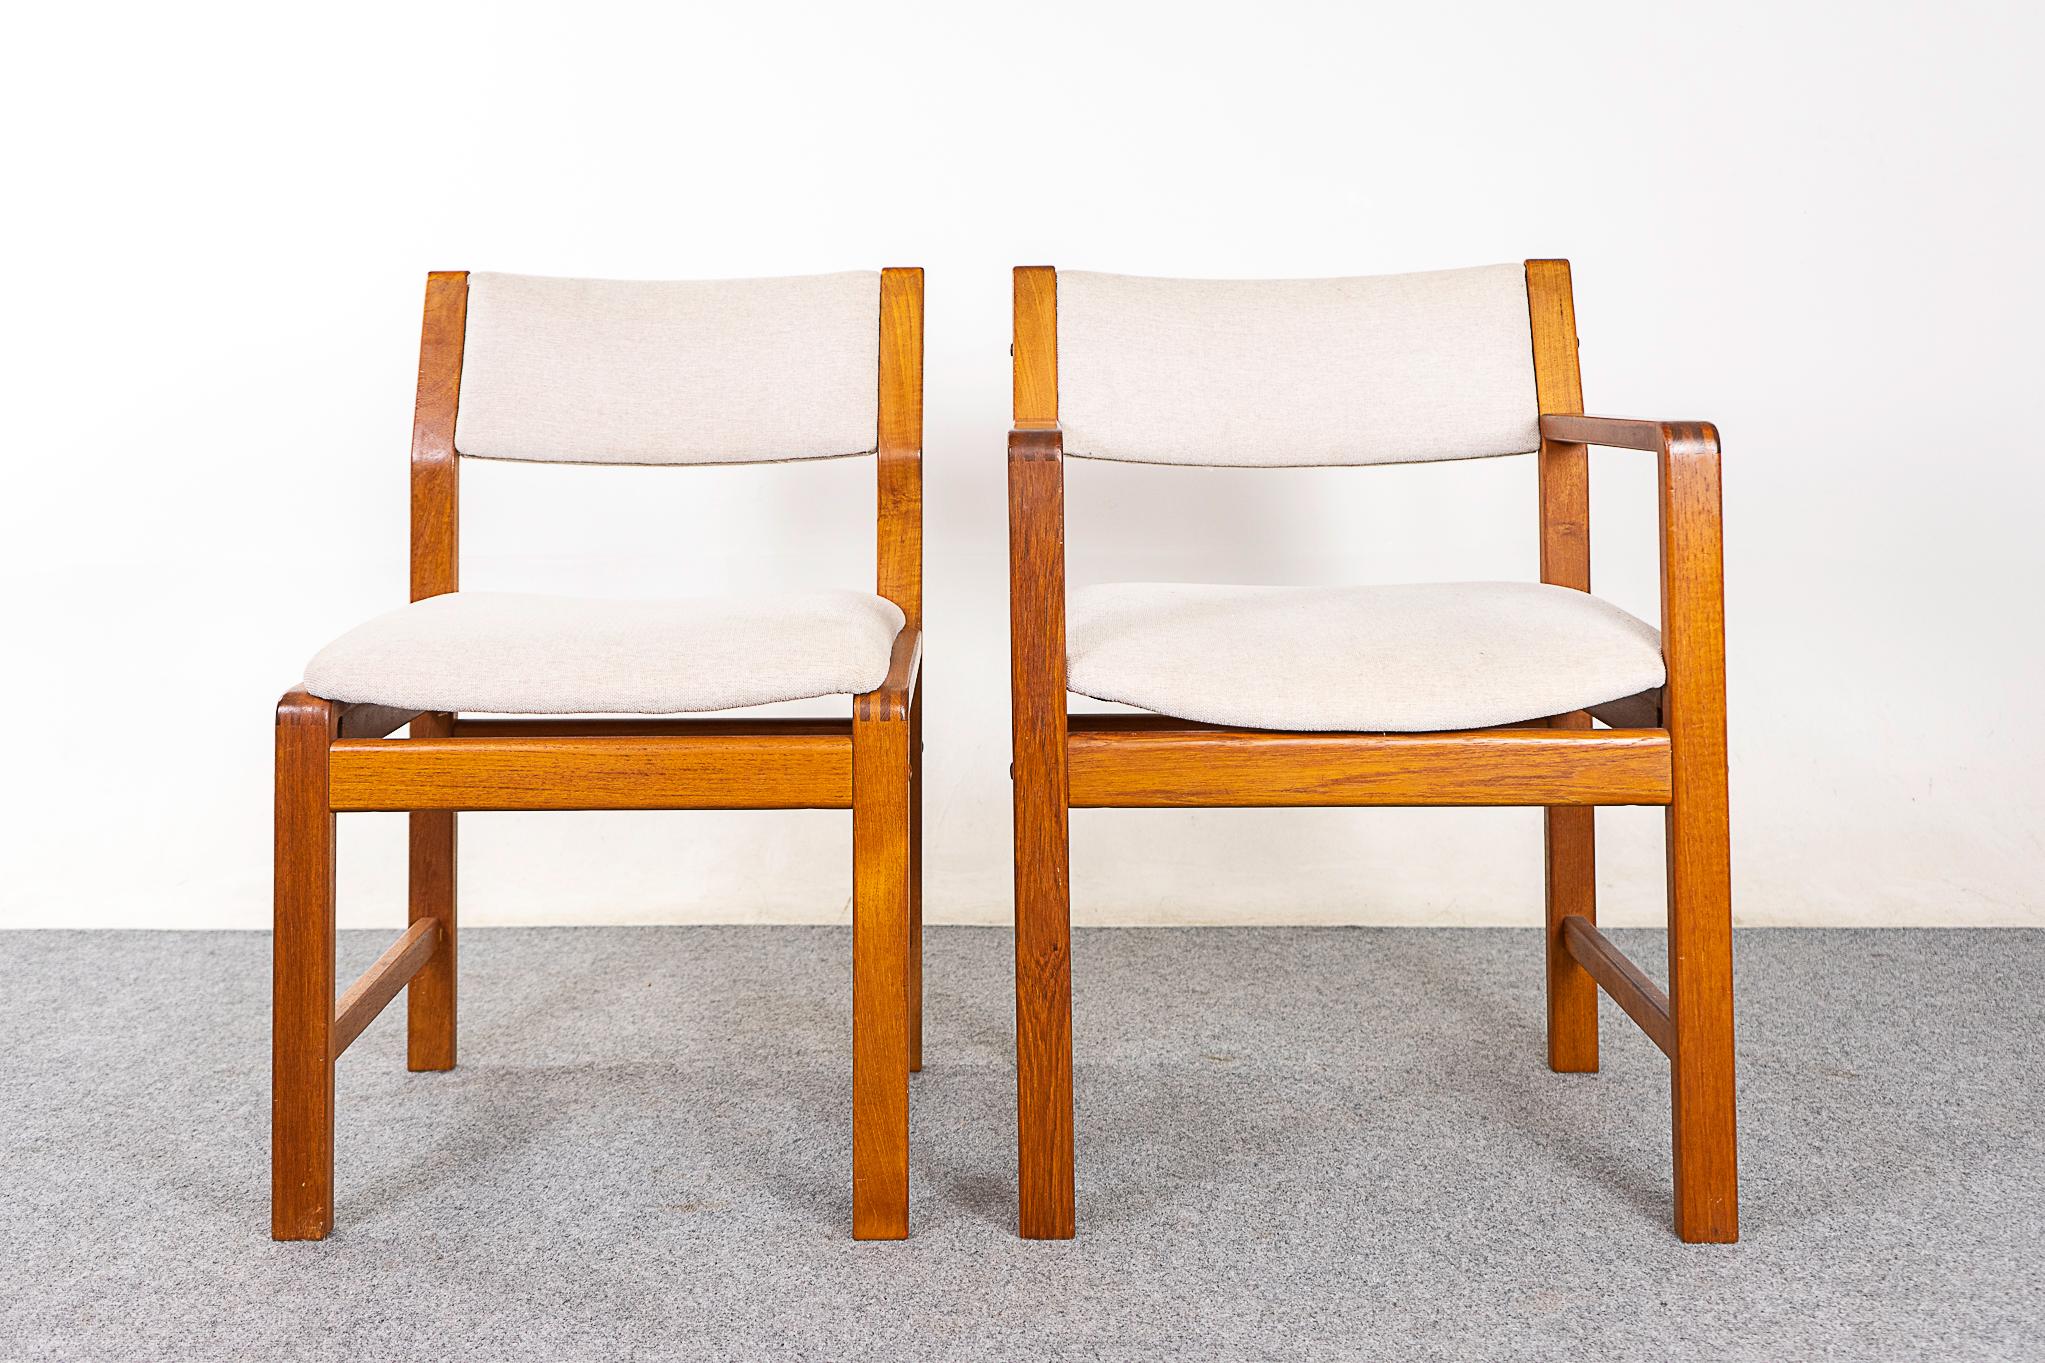 Esszimmerstühle aus Teakholz, ca. 1980er Jahre. Einfaches, robustes Design mit 2 Kapitänsstühlen.  

Unrestaurierter Artikel mit Option auf Kauf in restauriertem Zustand. Die Restaurierung umfasst Reparaturen, Abschleifen, Beizen und einen